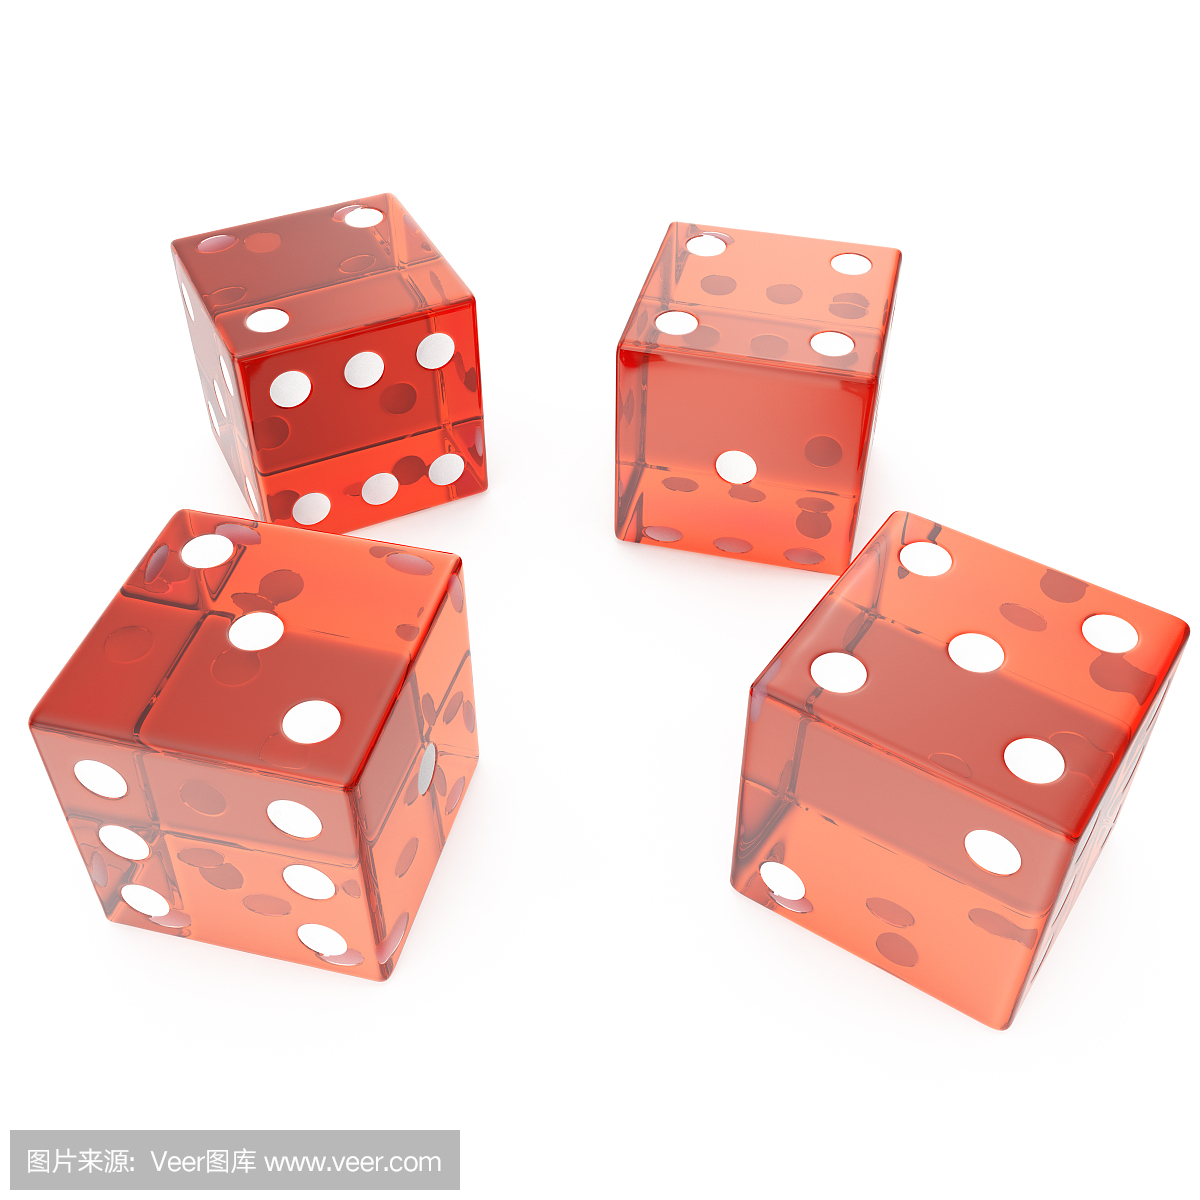 白色背景上的透明红色立方体,赌博的概念例如